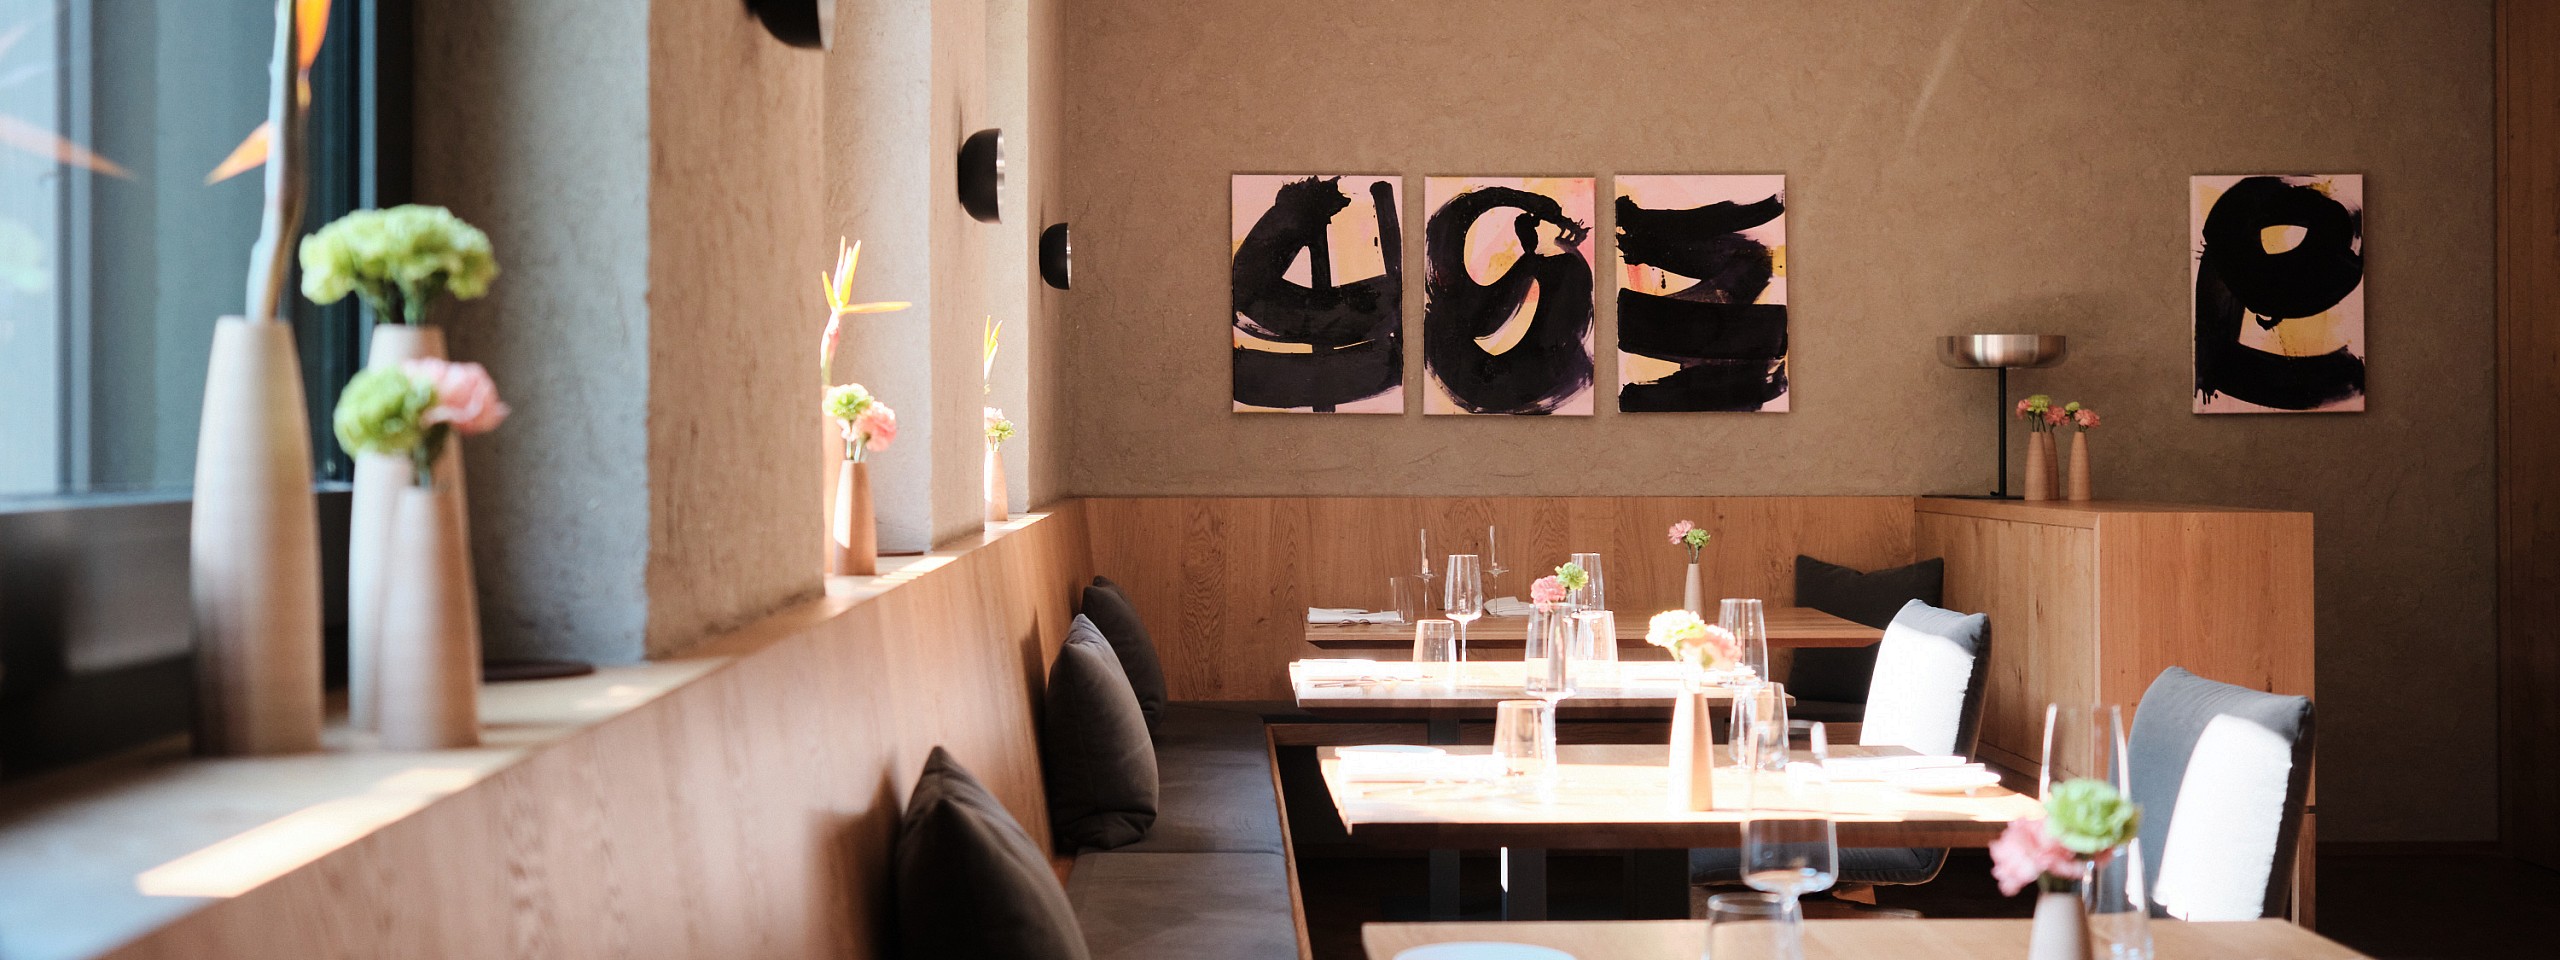 Stilvolles Sterne Restaurant im Schwarzwald mit hölzerner Eckbank und abstrakten Wandbildern.